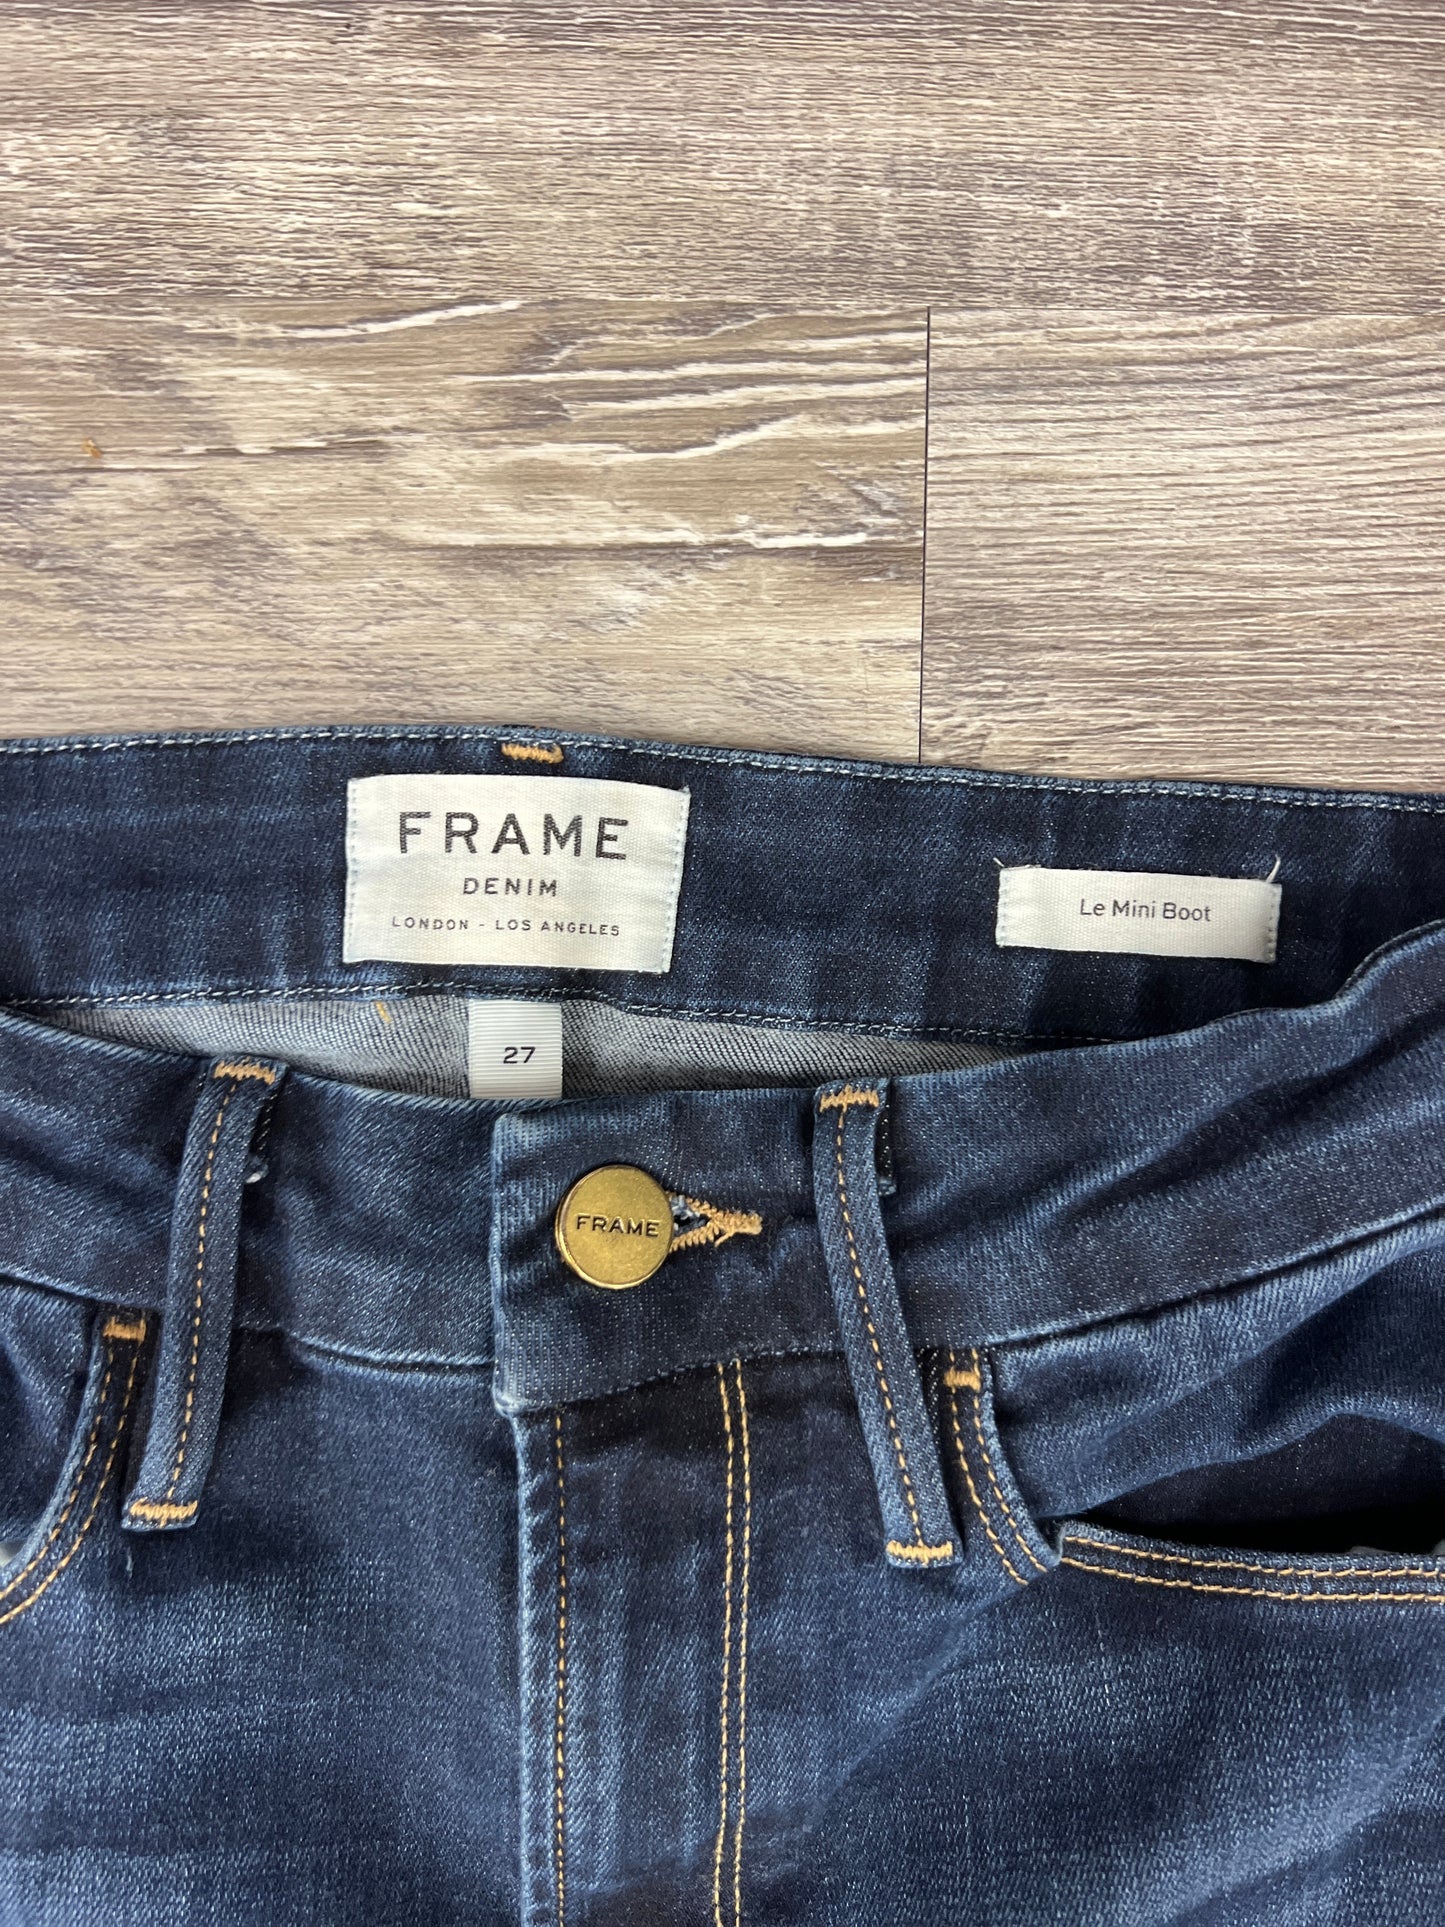 Jeans Designer By Frame Size: 4